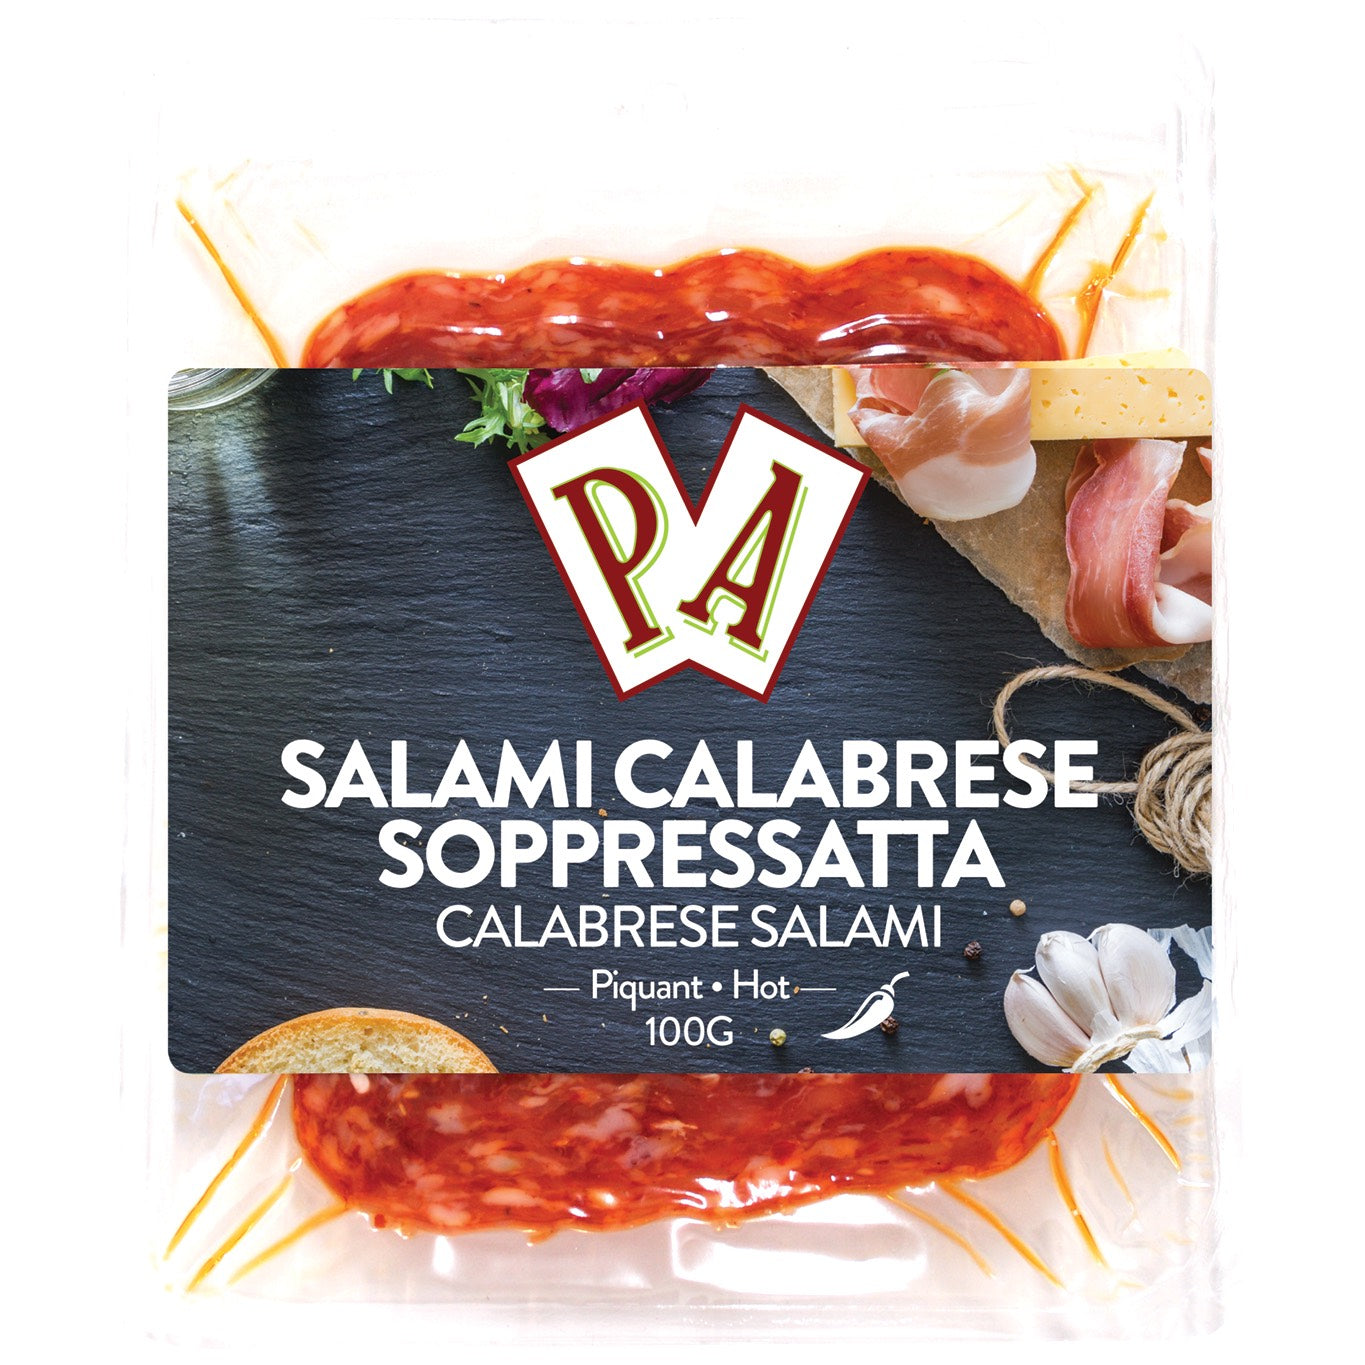 Hot Soppressata Calabrese Salami